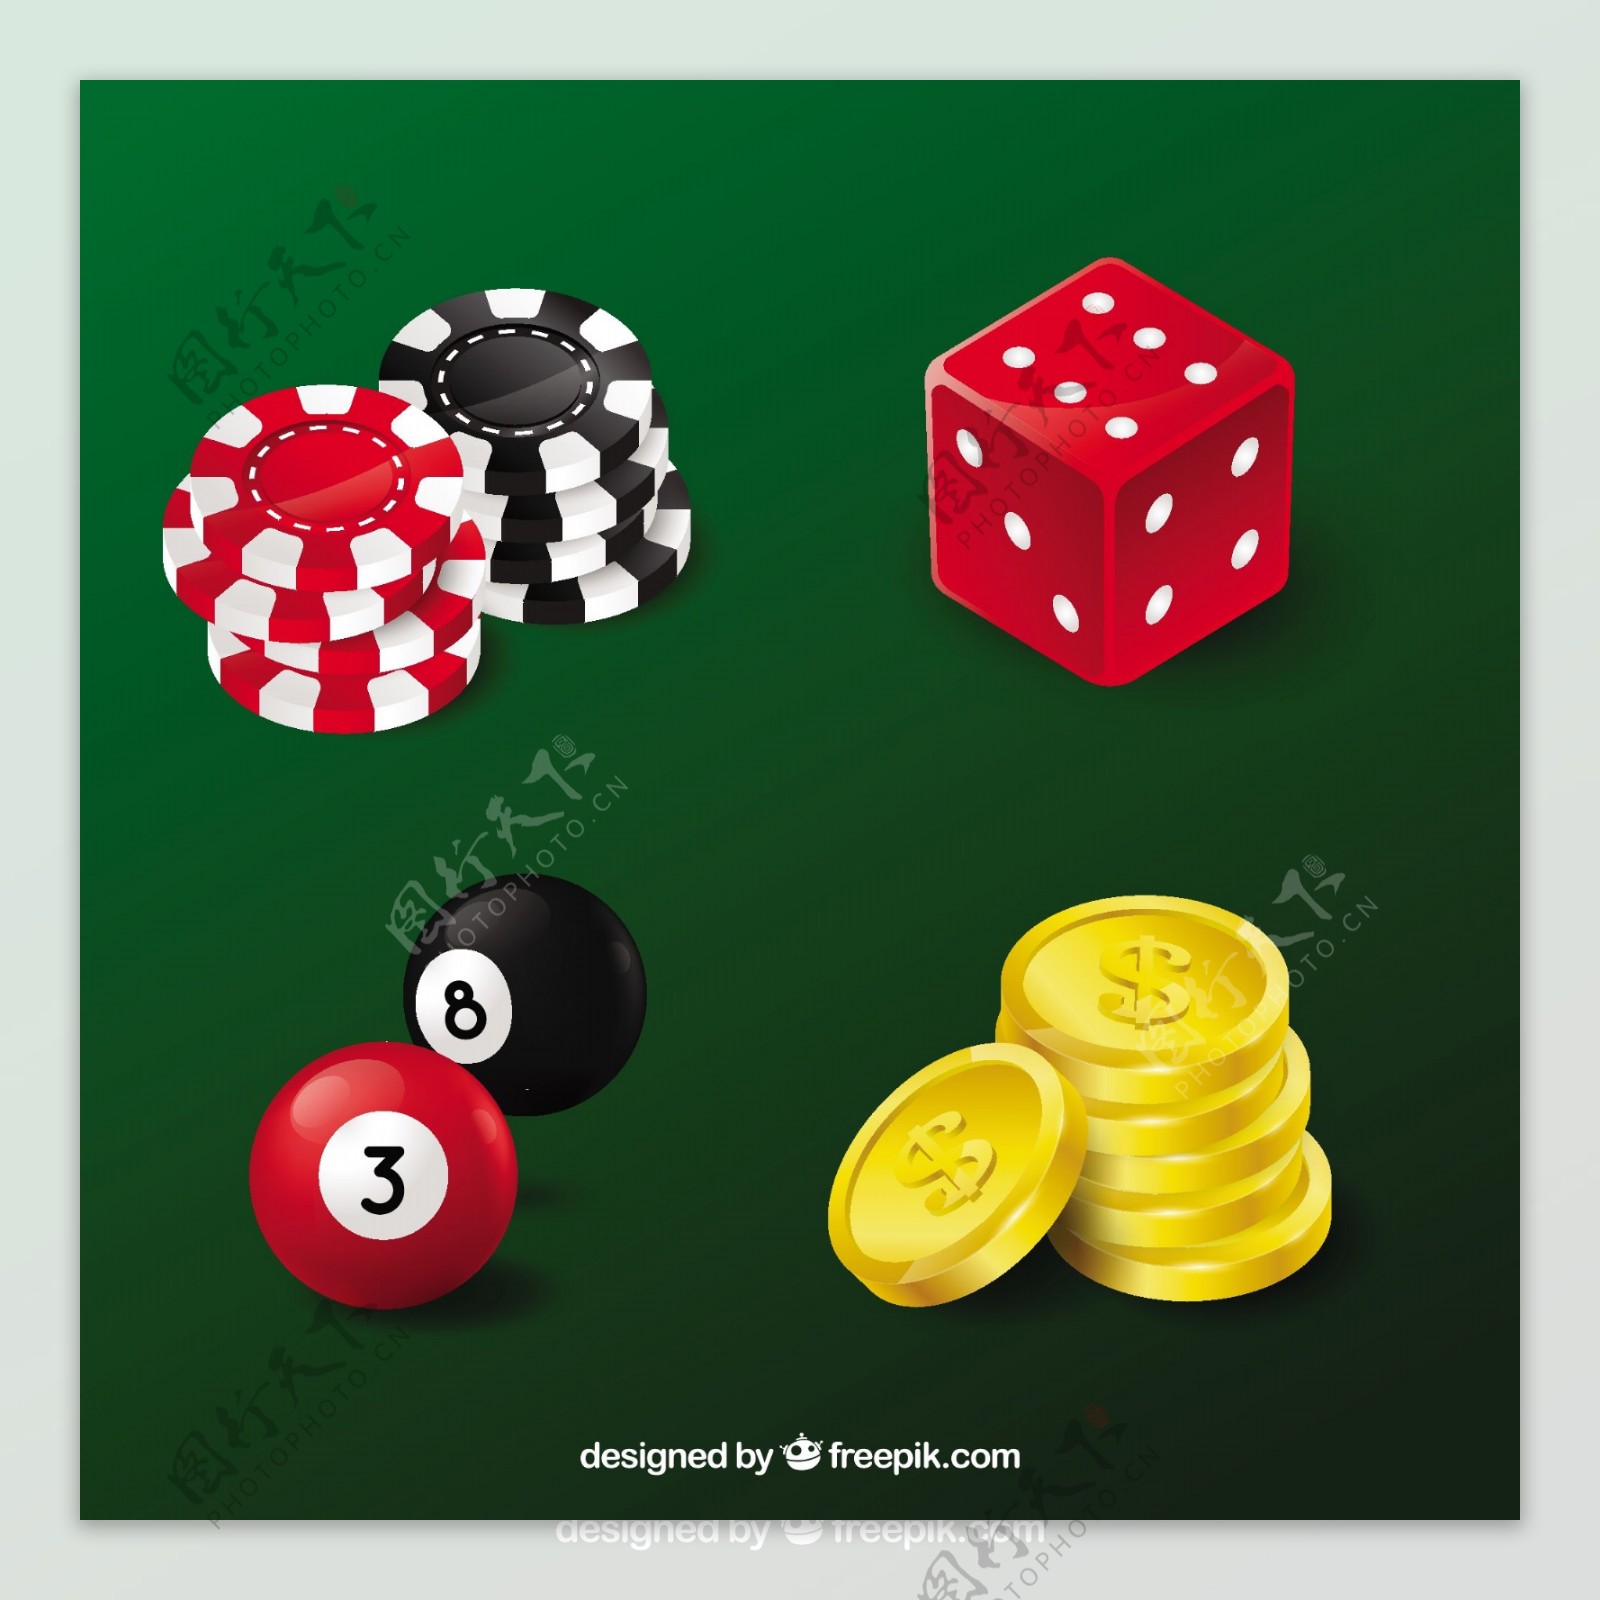 各种赌场元素赌具矢量素材